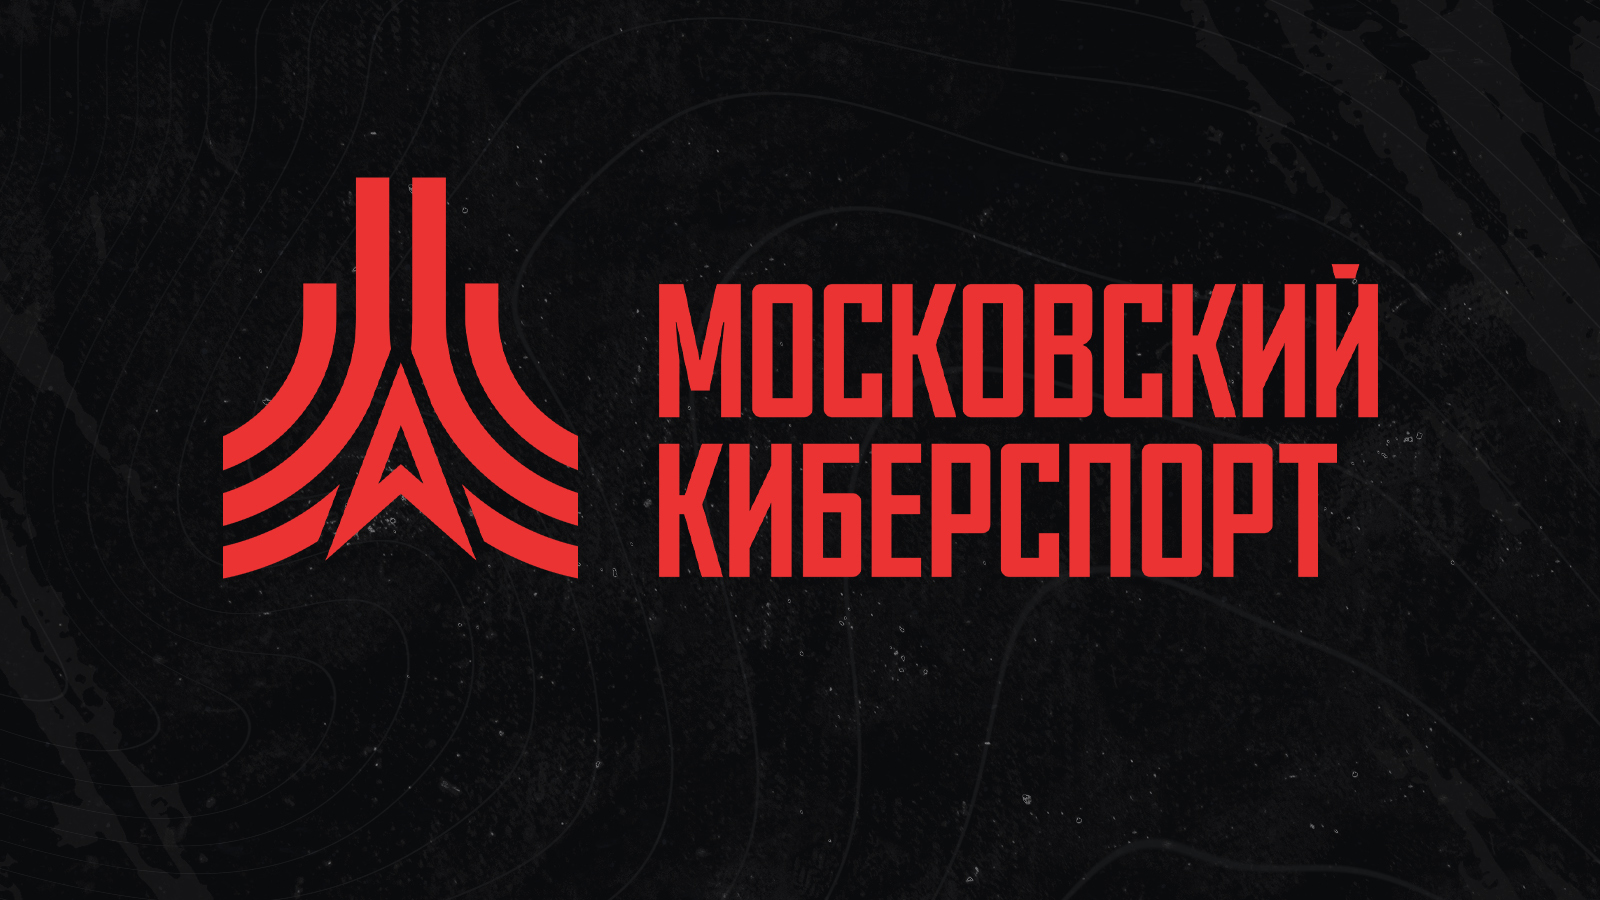 Четыре бесплатные онлайн-турнира «Московского Киберспорта» пройдут с 14 по 19 ноября